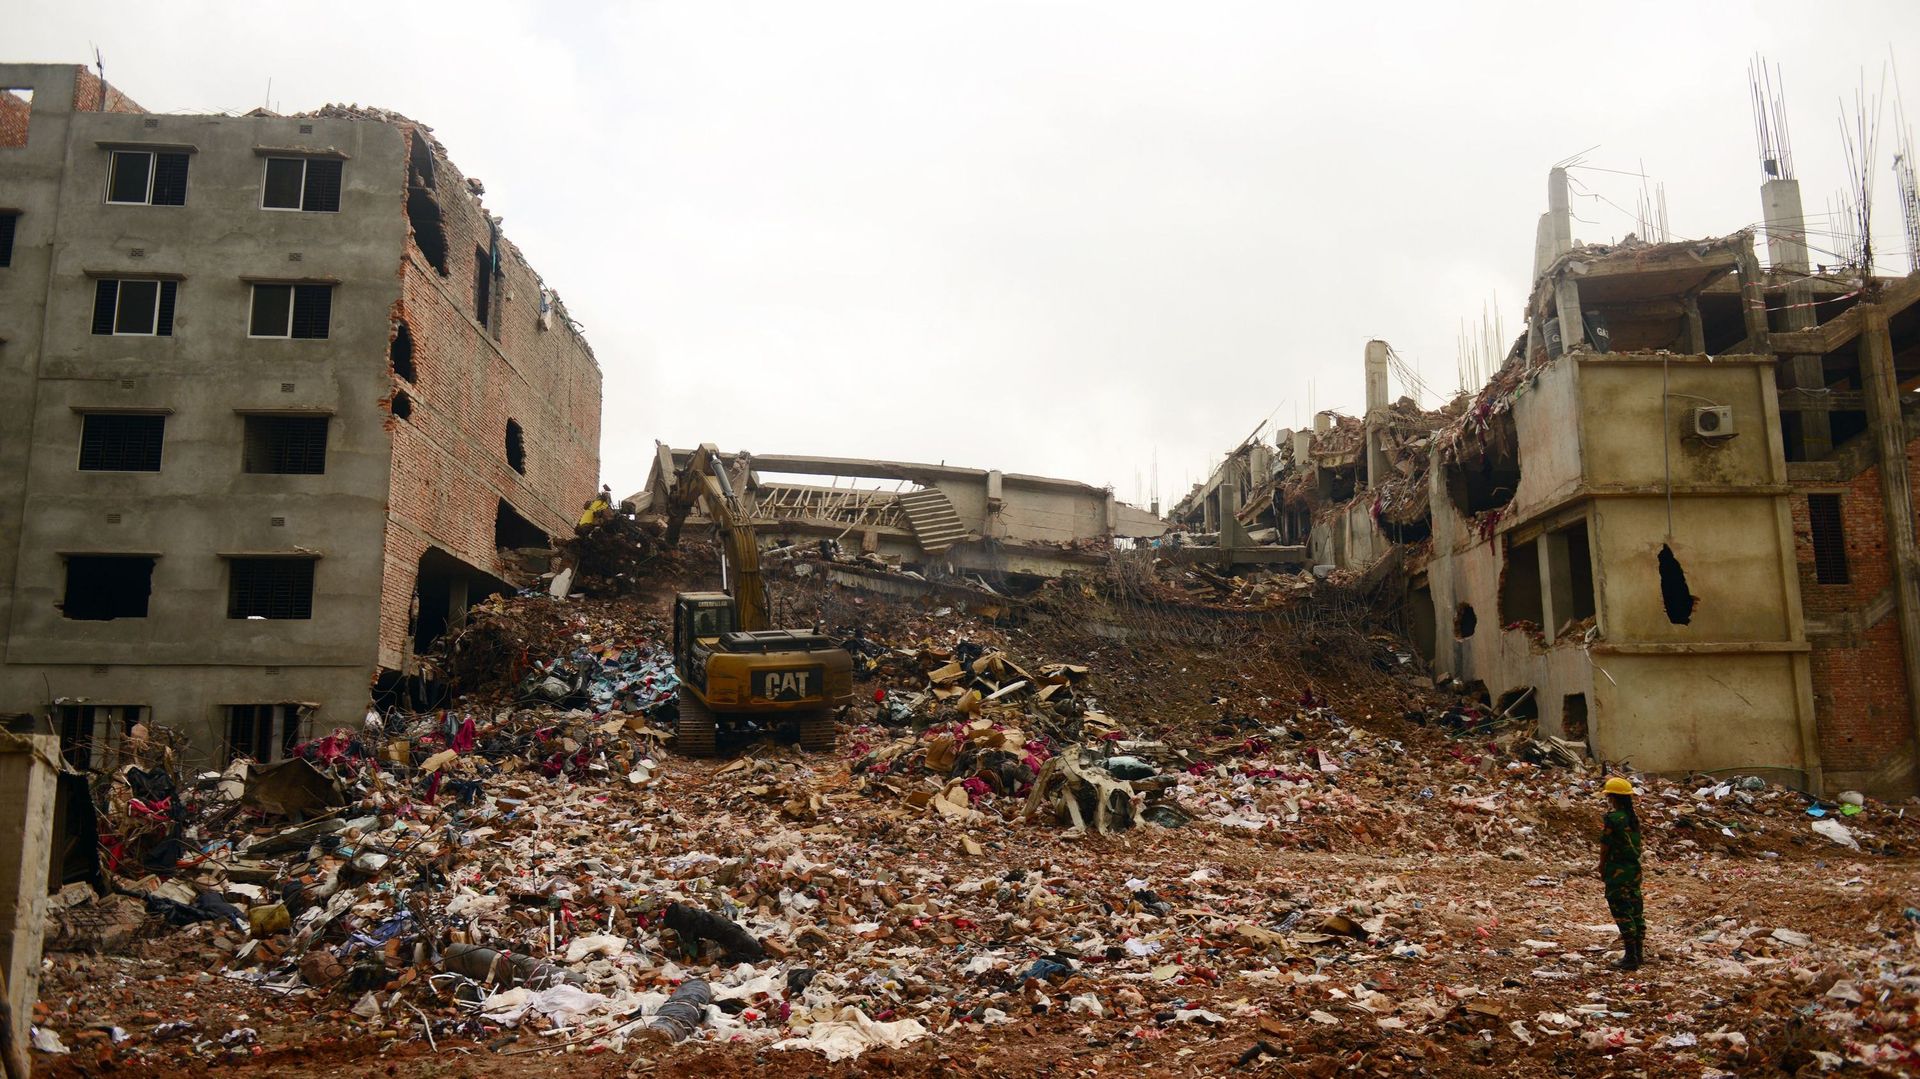 Les escavations continuent sur le site de l'effondrement de l'usine textile, mais il semble désormais impossible de retrouver des survivants